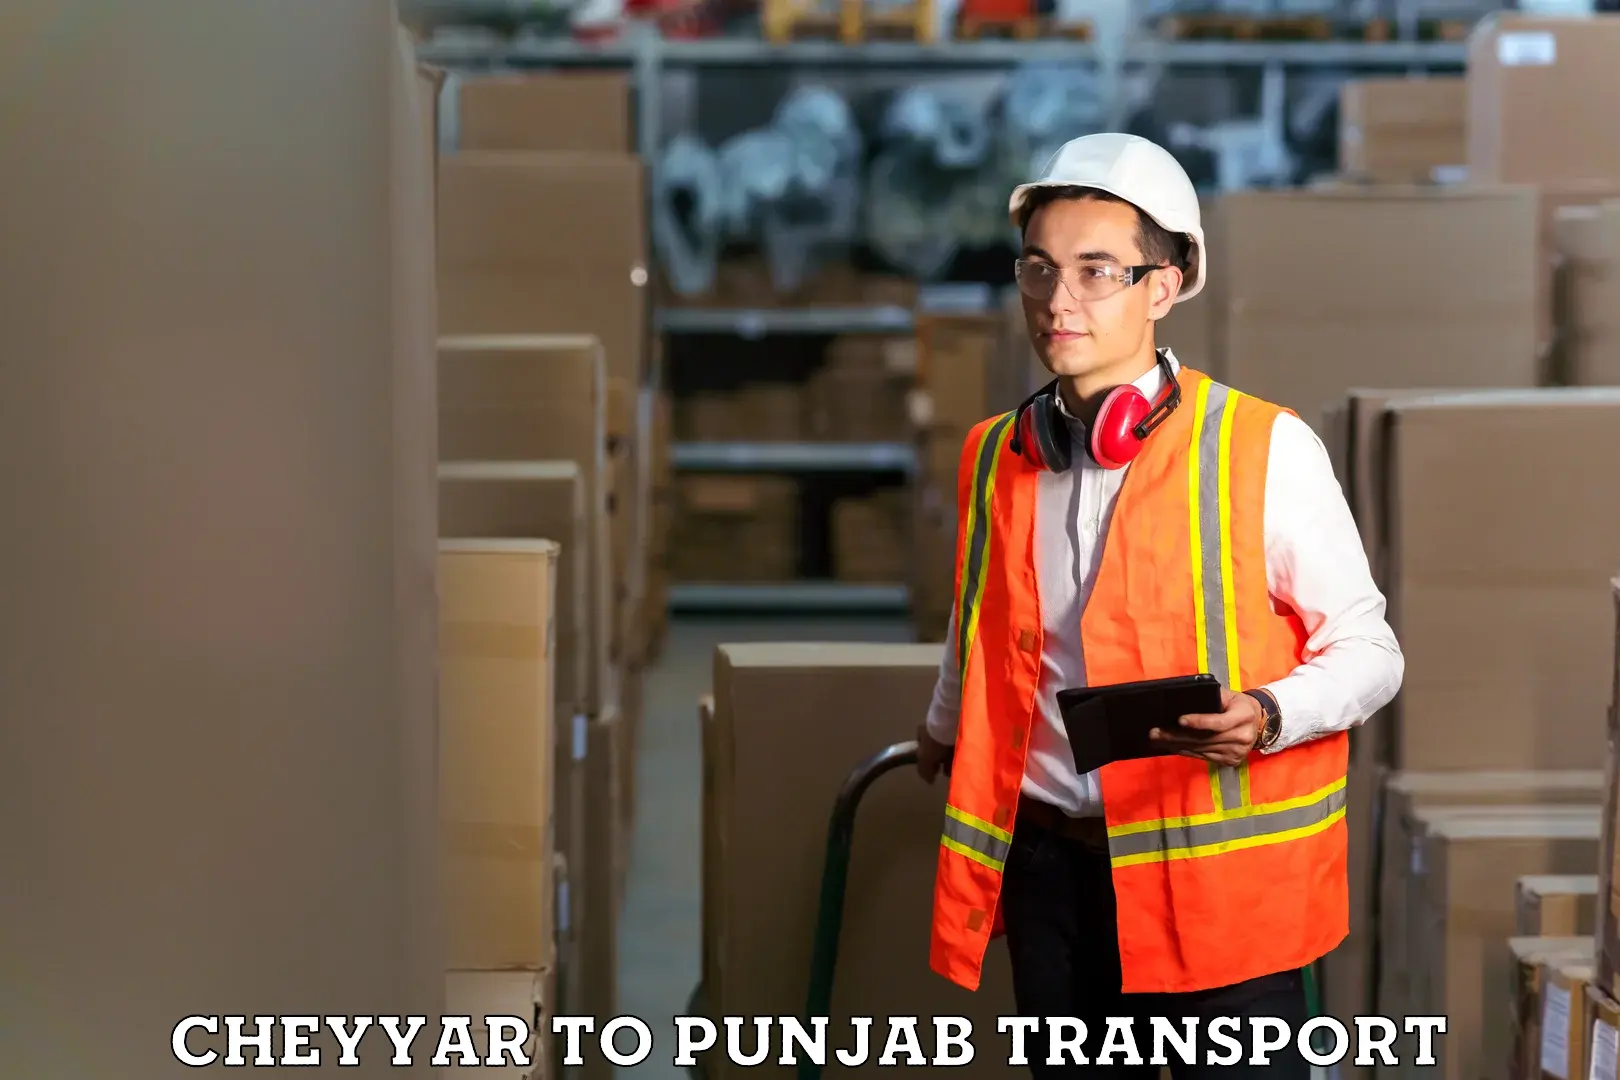 Pick up transport service Cheyyar to Punjab